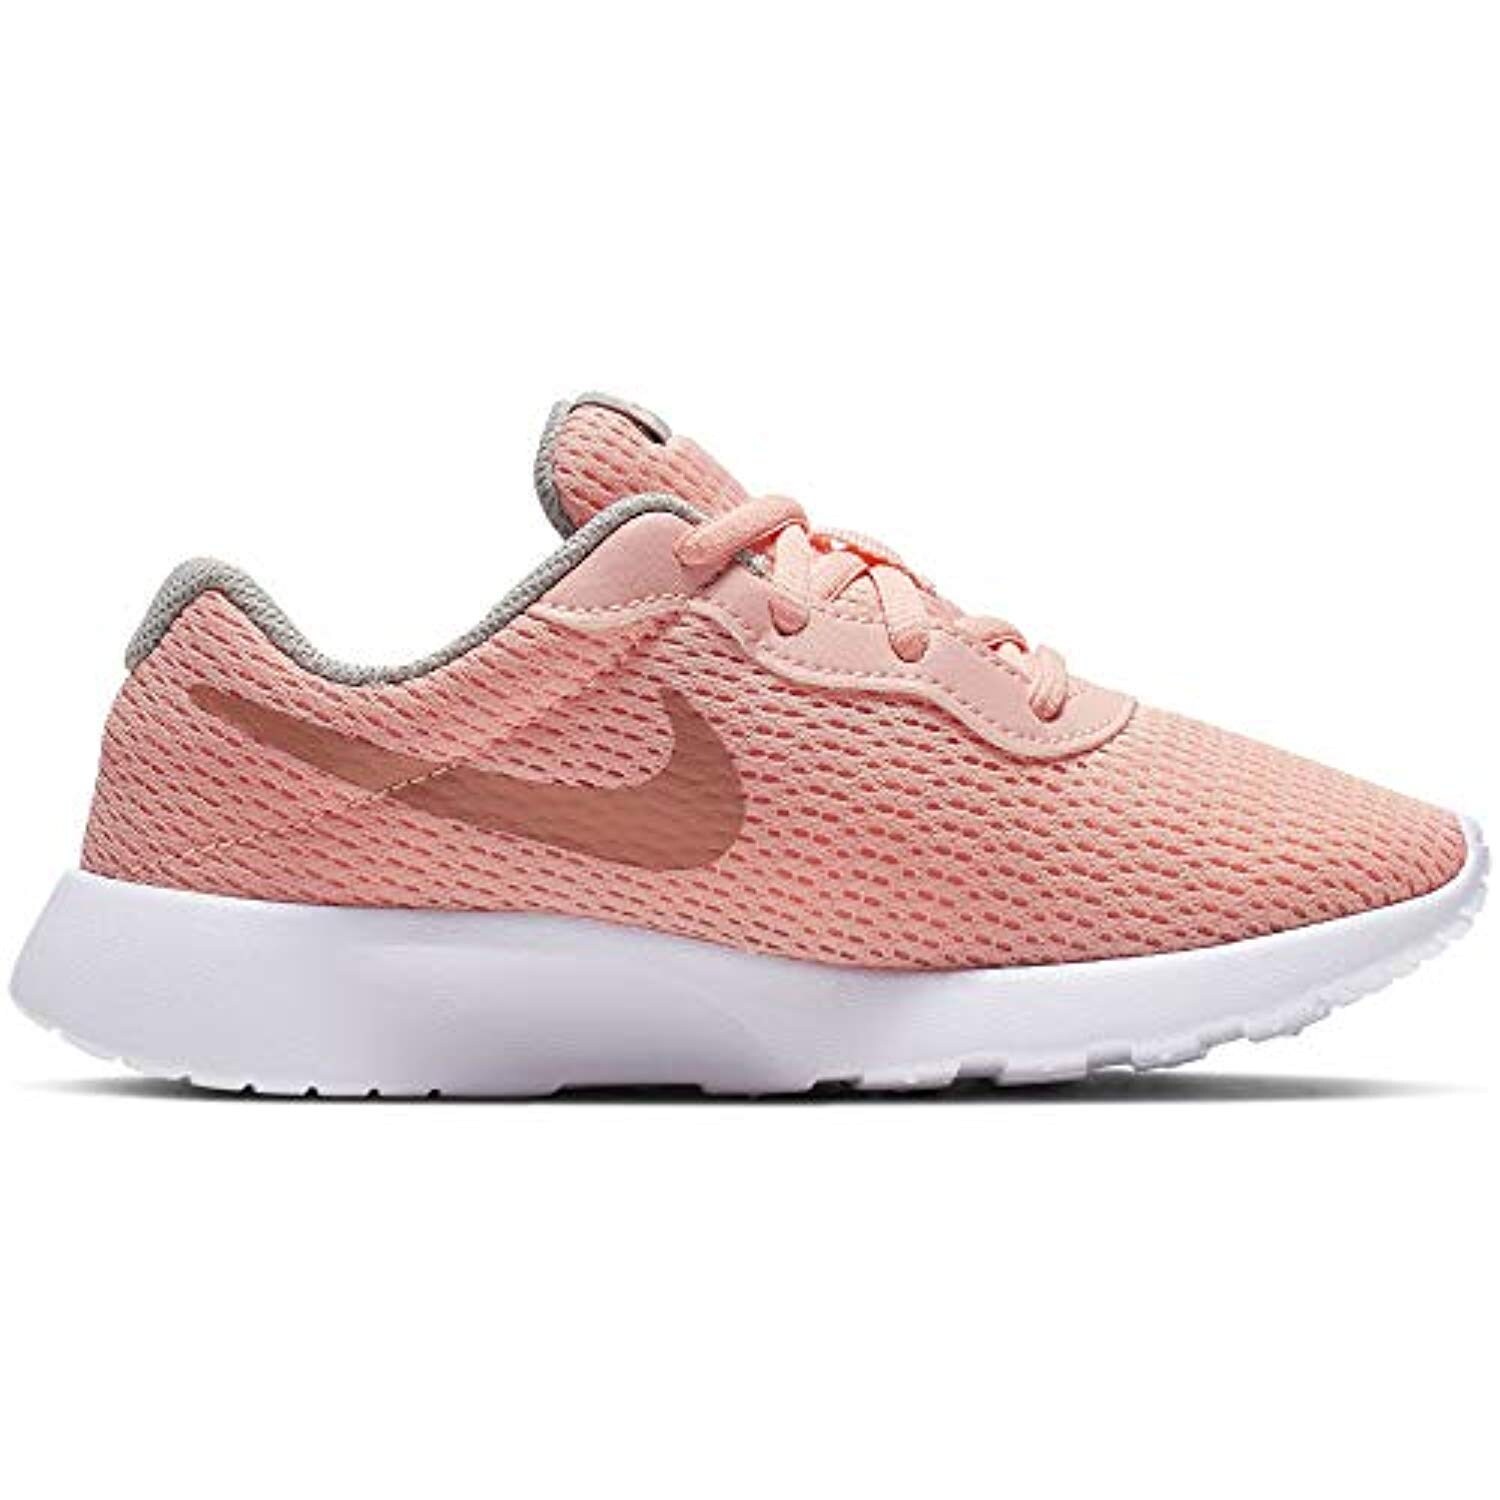 Nike Girl's Tanjun Shoe Pink Tint 